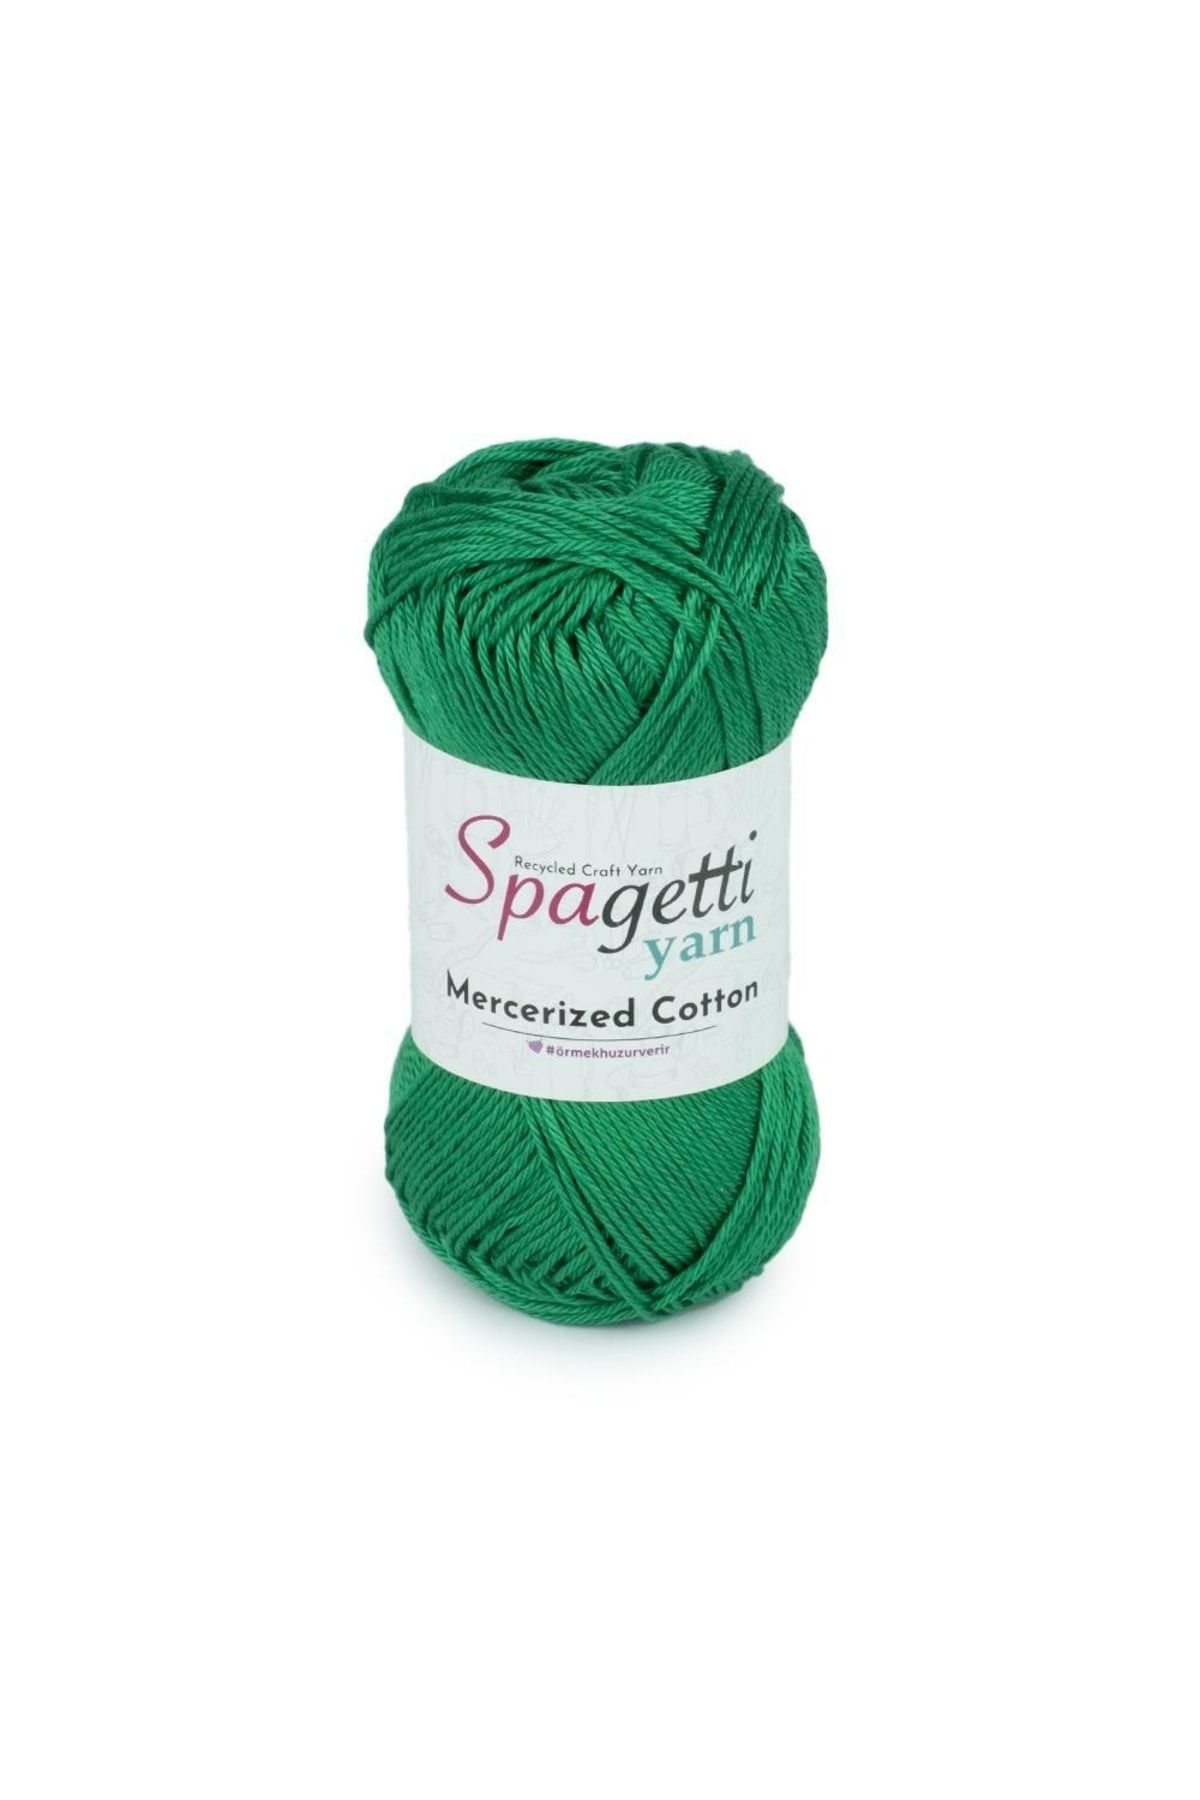 Spagettiyarn Mercerized Cotton Benetton Yeşil El Örgü Ipliği